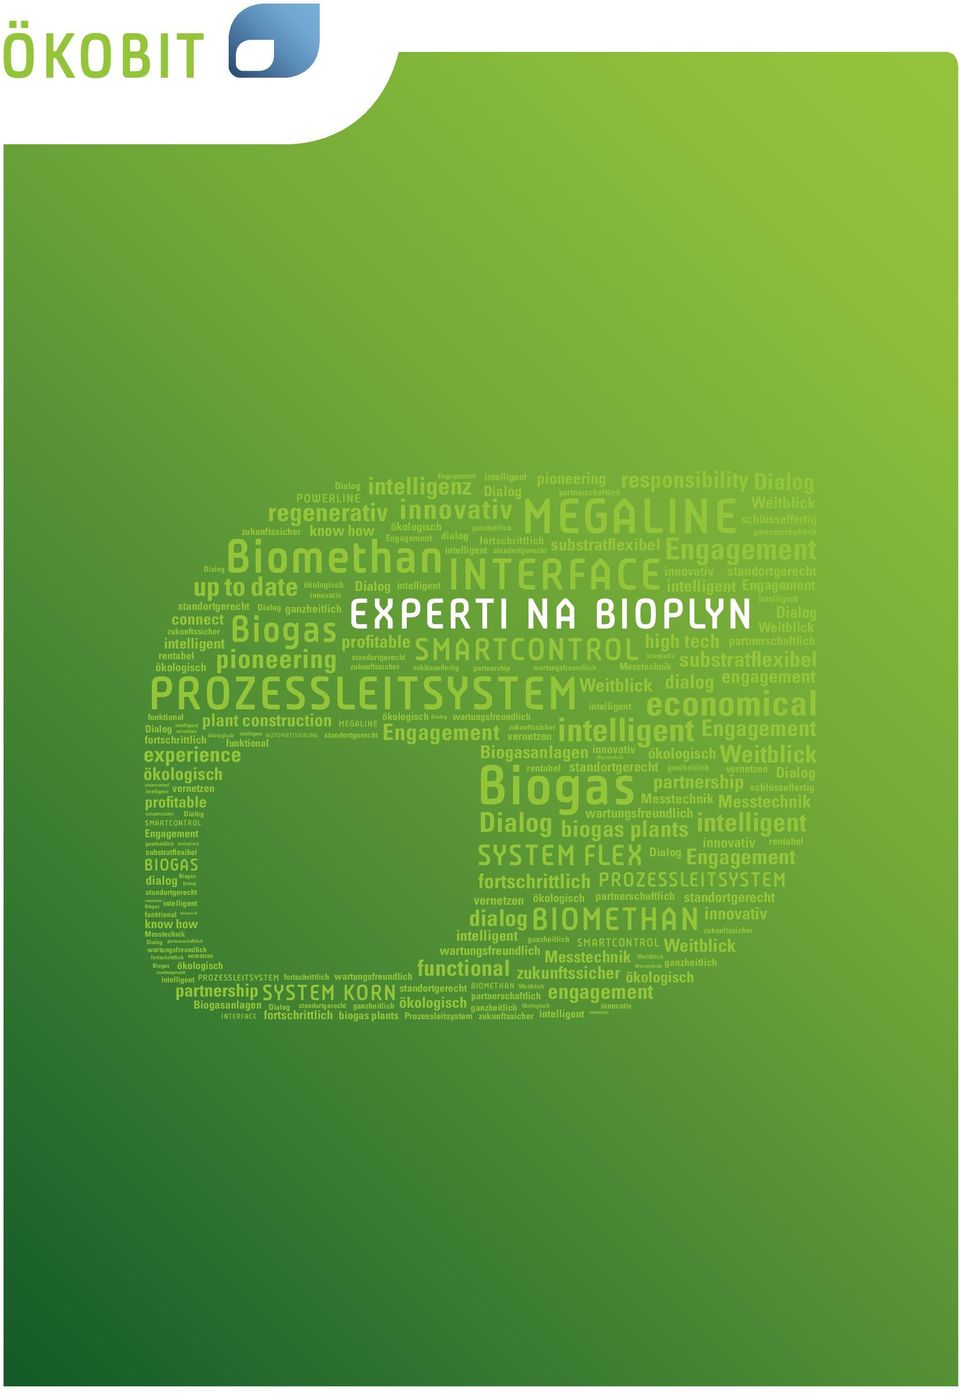 partnerschaftlich partnership partnerschaftlich partnerschaftlich partnerschaftlich partnership partnerschaftlich economical biogas plants Biogasanlagen schlüsselfertig schlüsselfertig